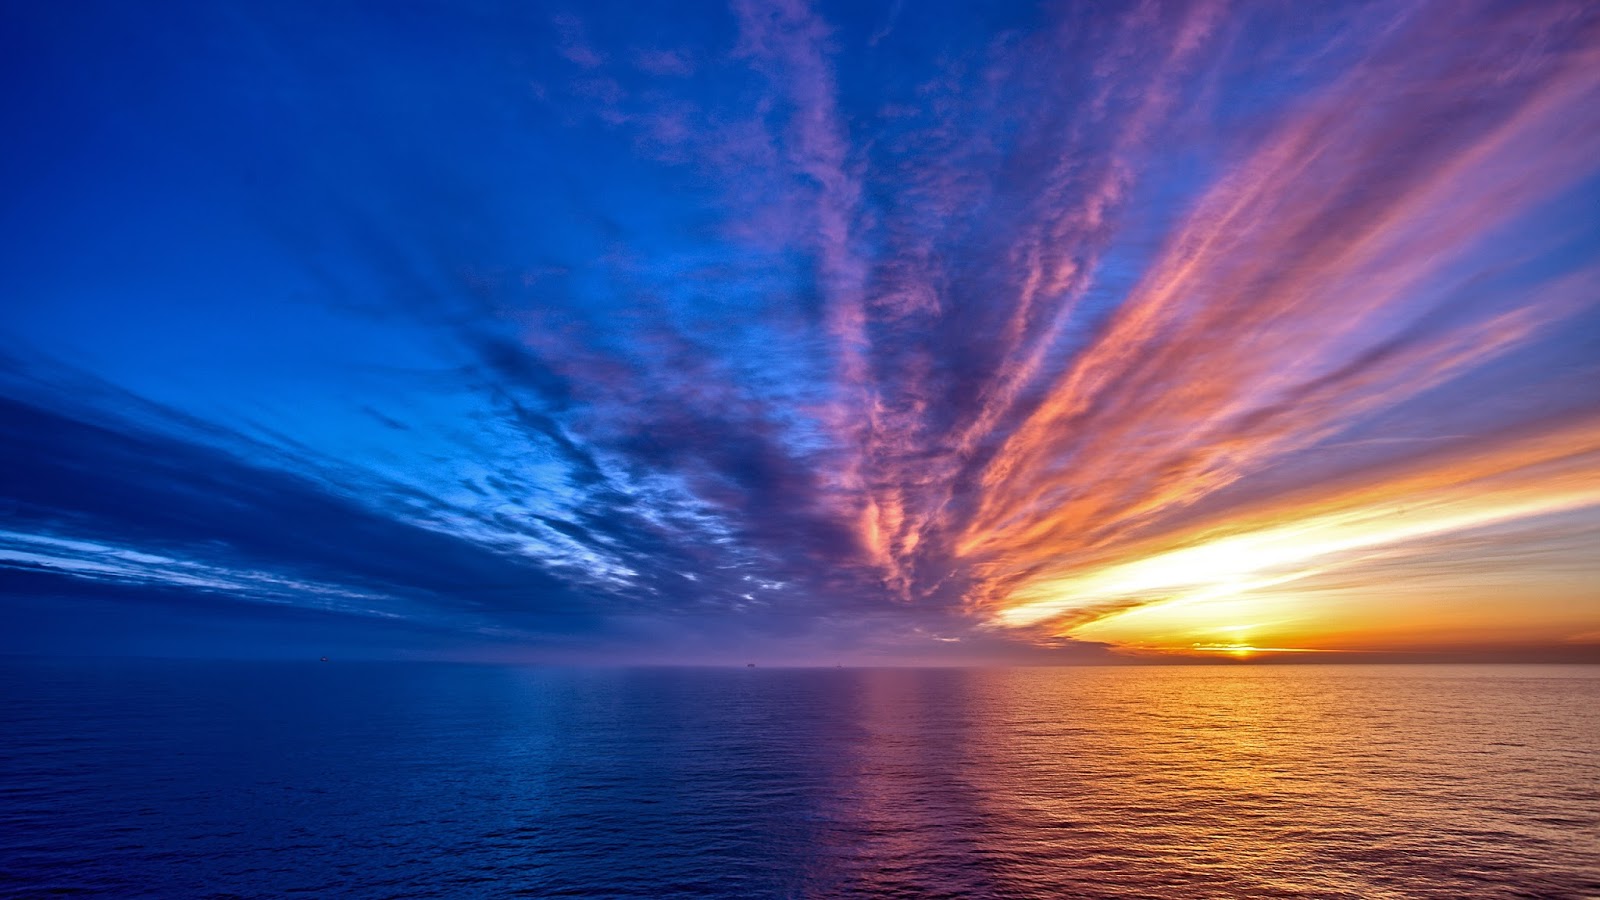 sunrise sunset at sea.jpeg